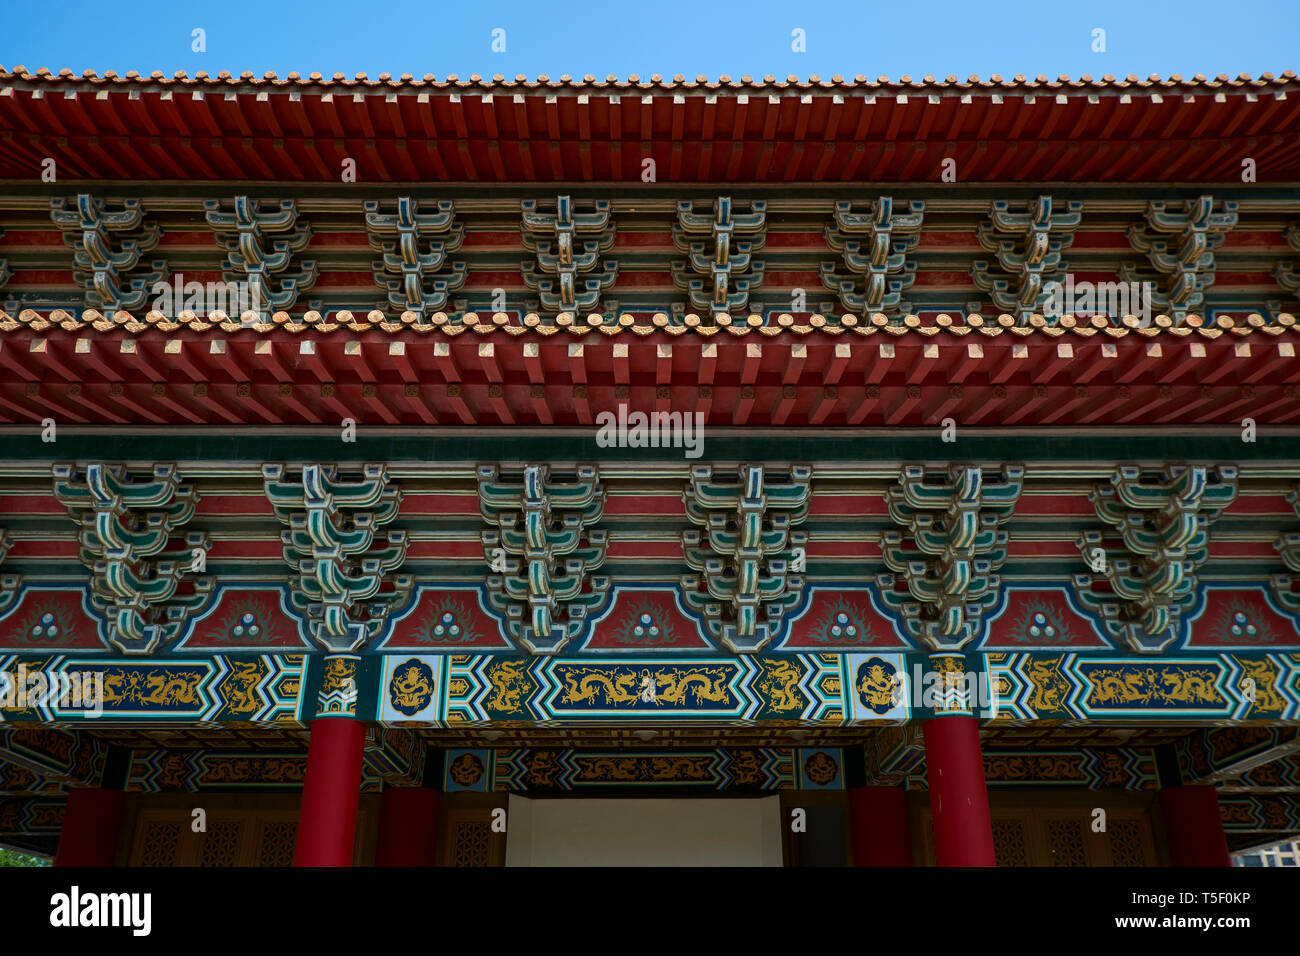 Détail de l'élaborer, toit peint en rouge sur les boiseries la pagode principale au temple chinois Confucius complexe. Chez Lotus Lake à Kaohsiung, Taïwan. Banque D'Images